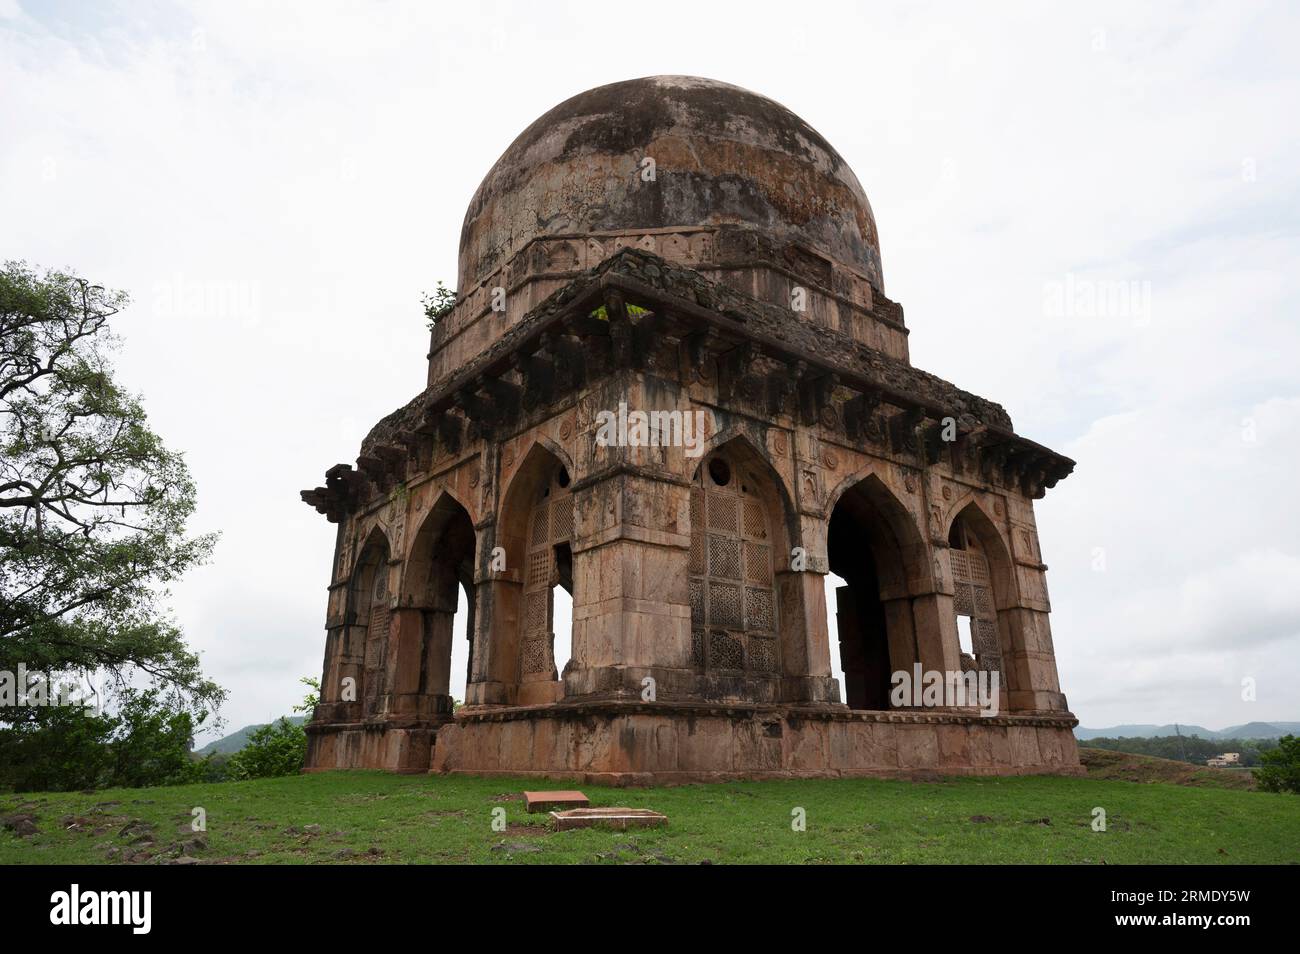 Jali Mahal, located in Mandu, Madhya Pradesh, India Stock Photo